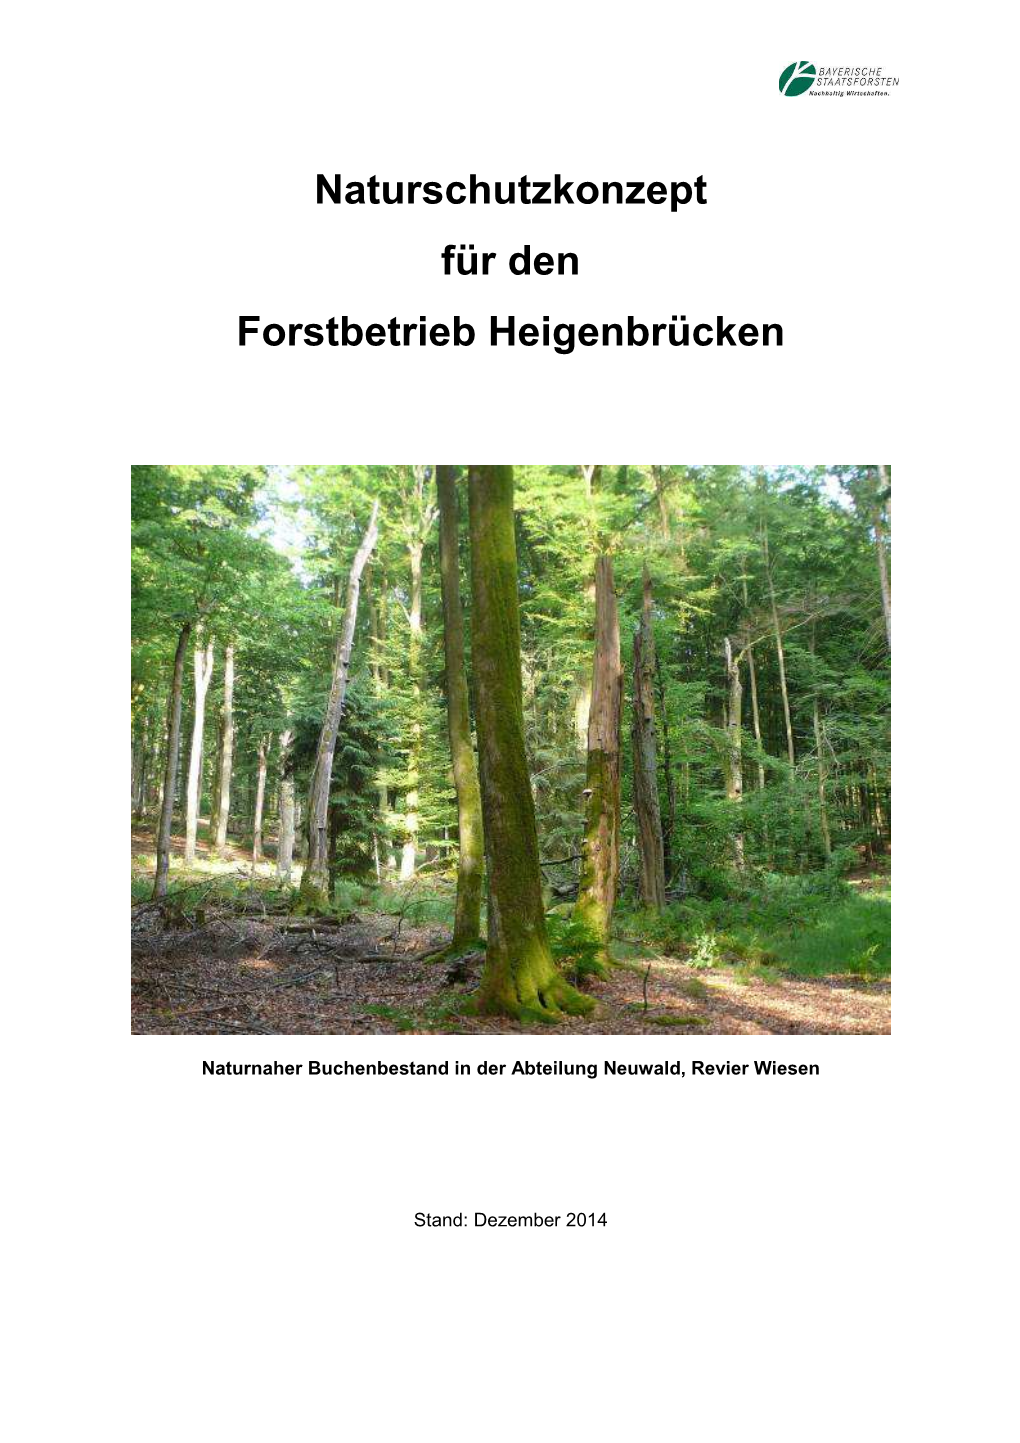 Naturschutzkonzept Für Den Forstbetrieb Heigenbrücken